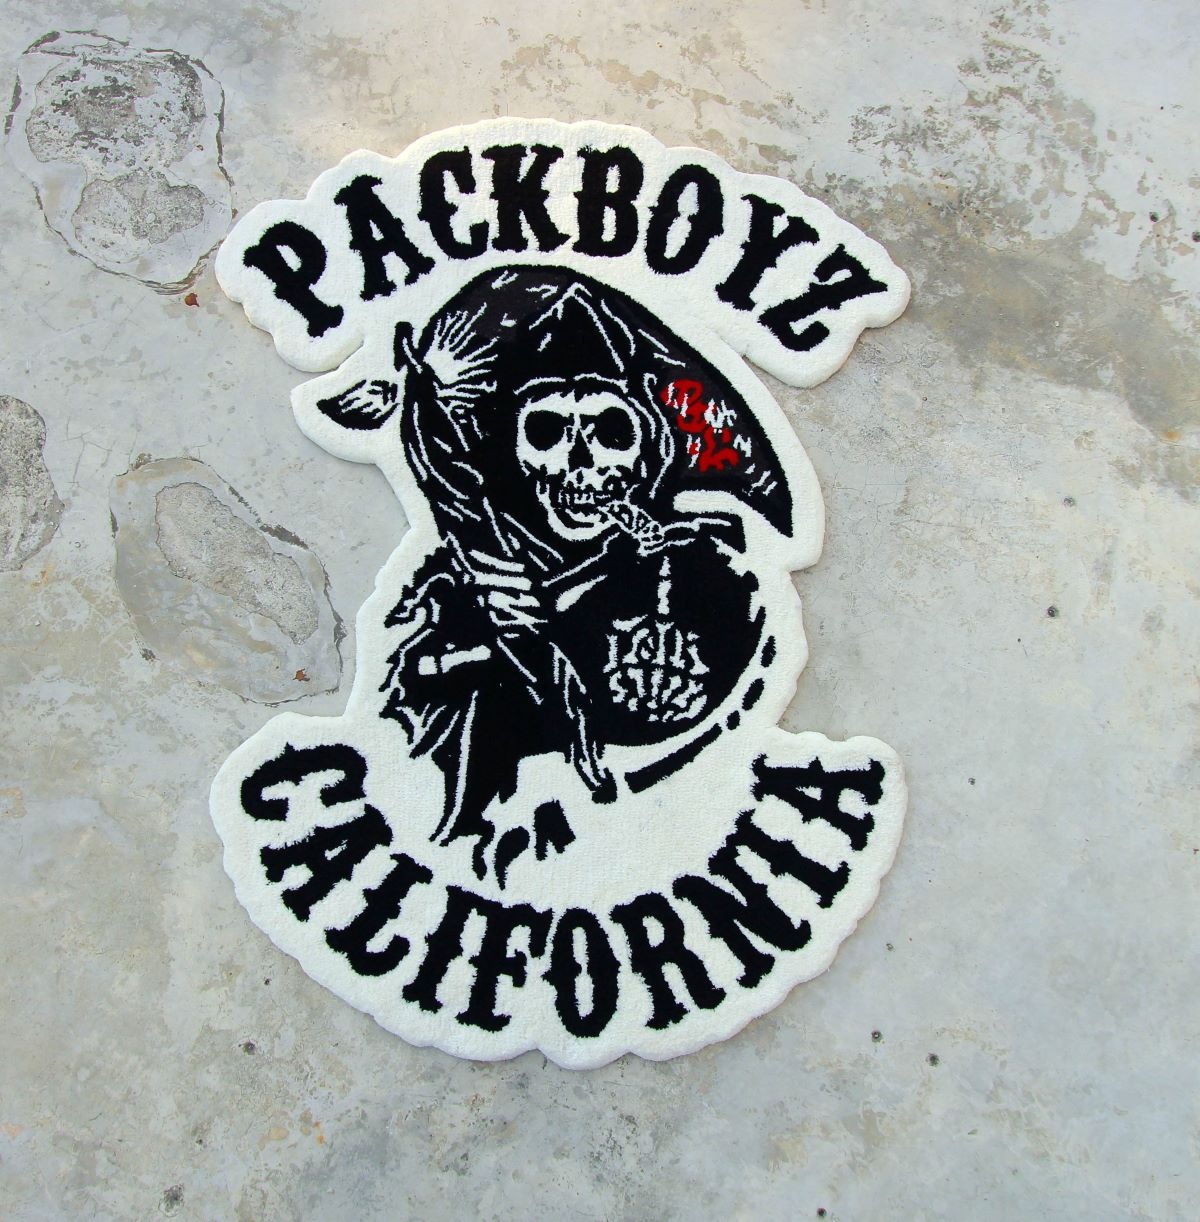 Pack Boys | @packboyzz